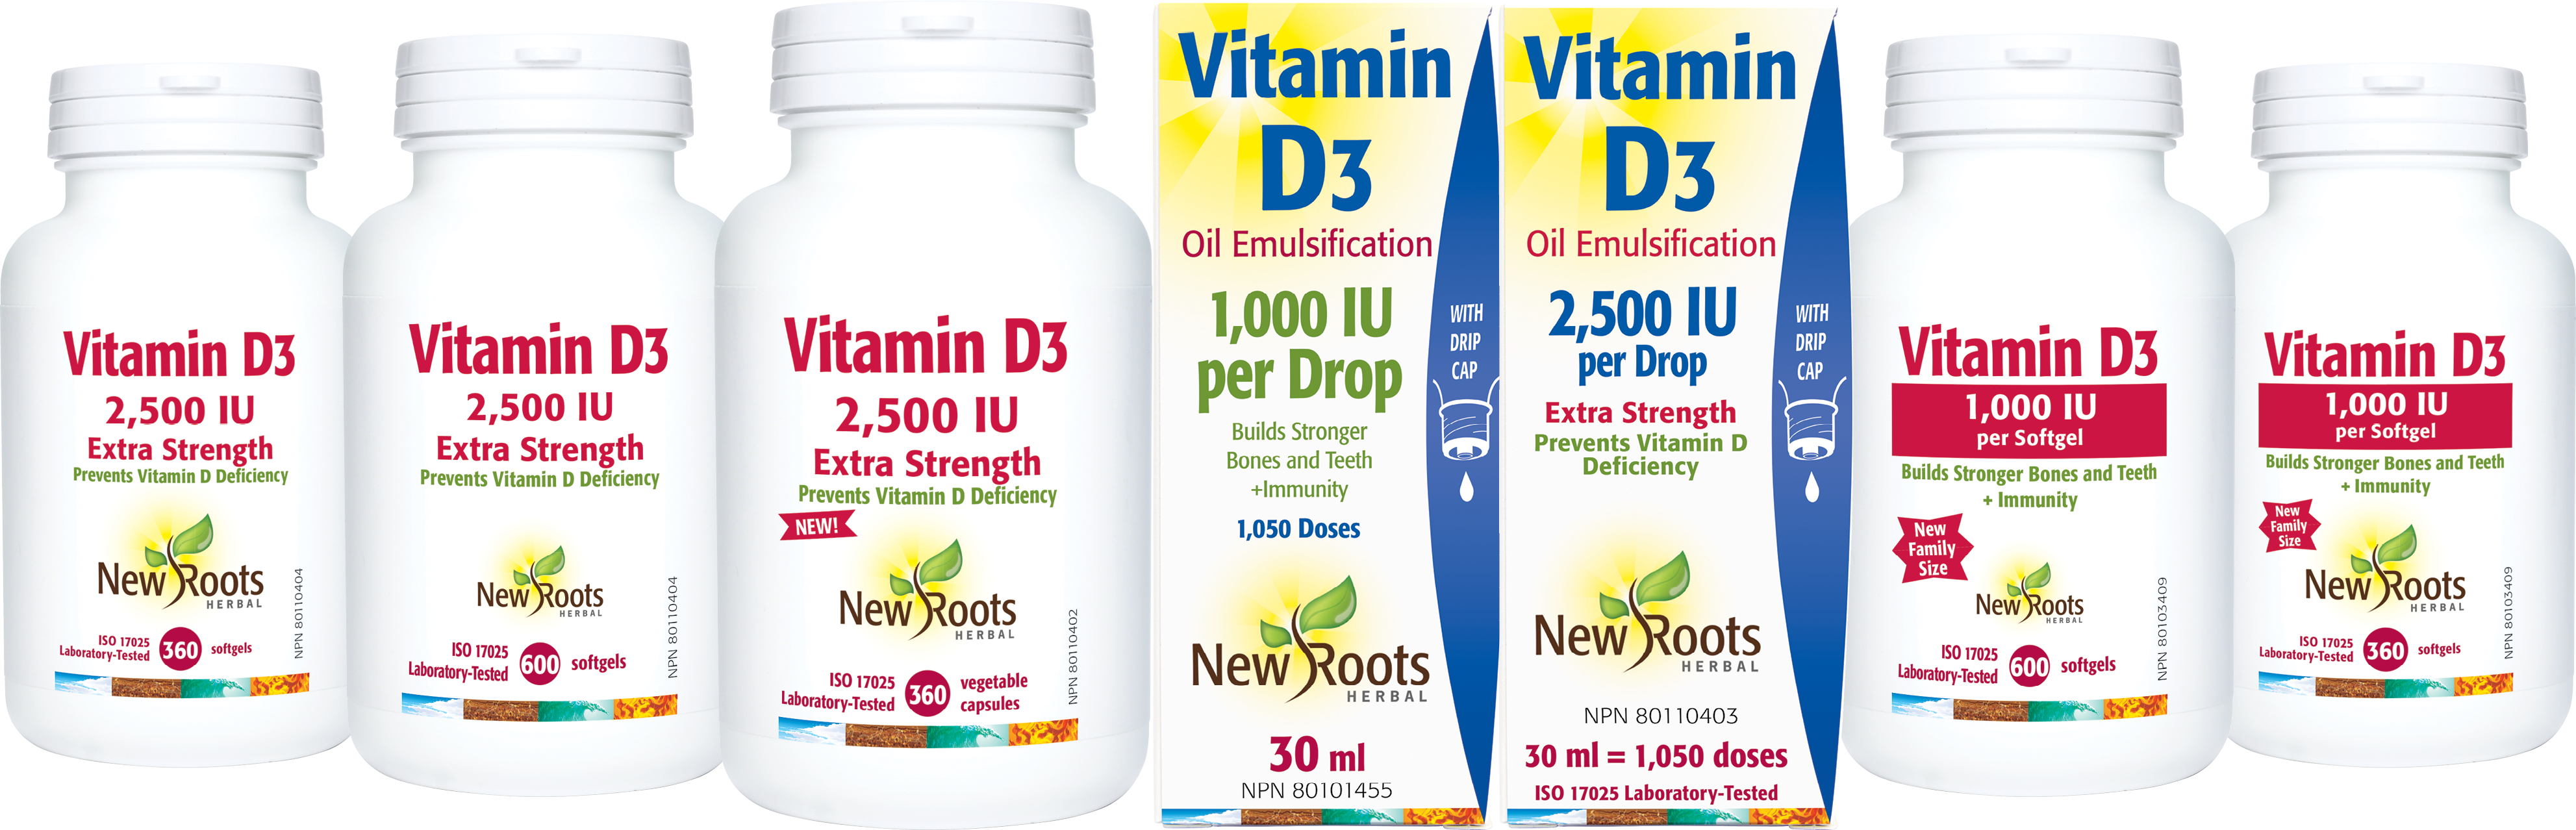 vitamin D3 bottles